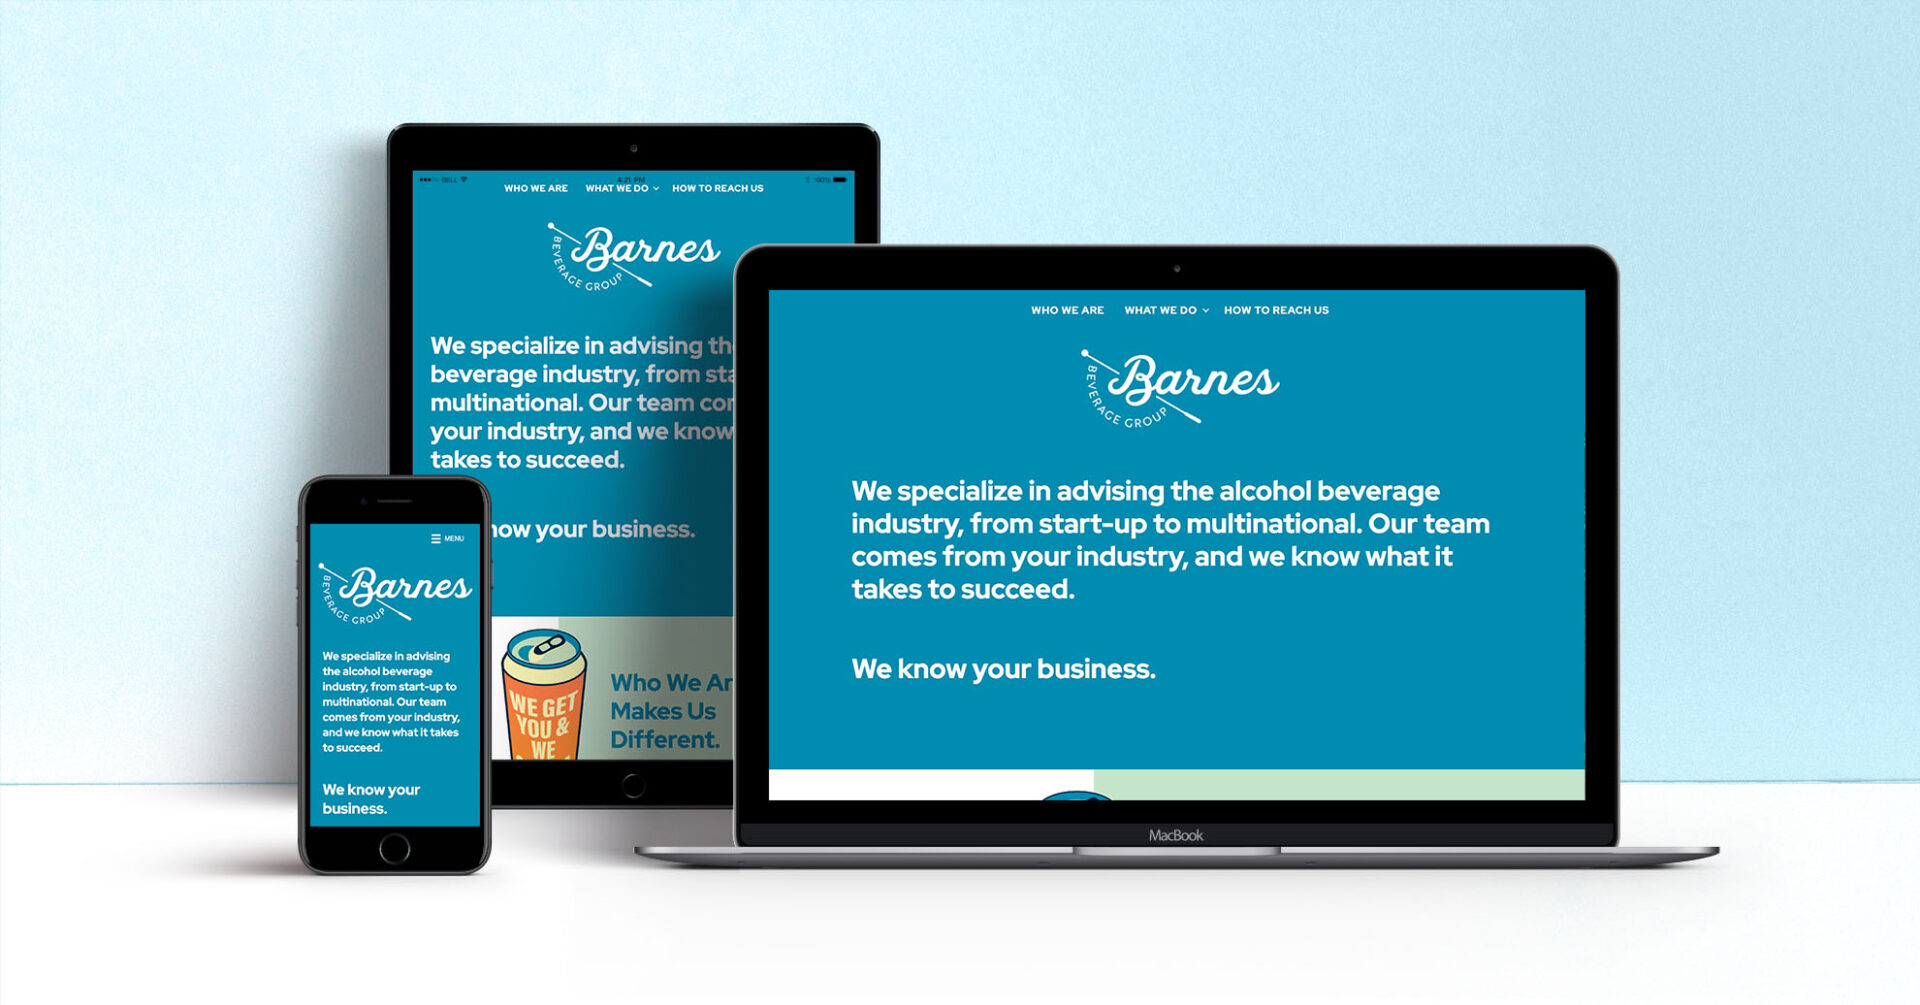 Barnes Beverage Group responsive website design for law firm